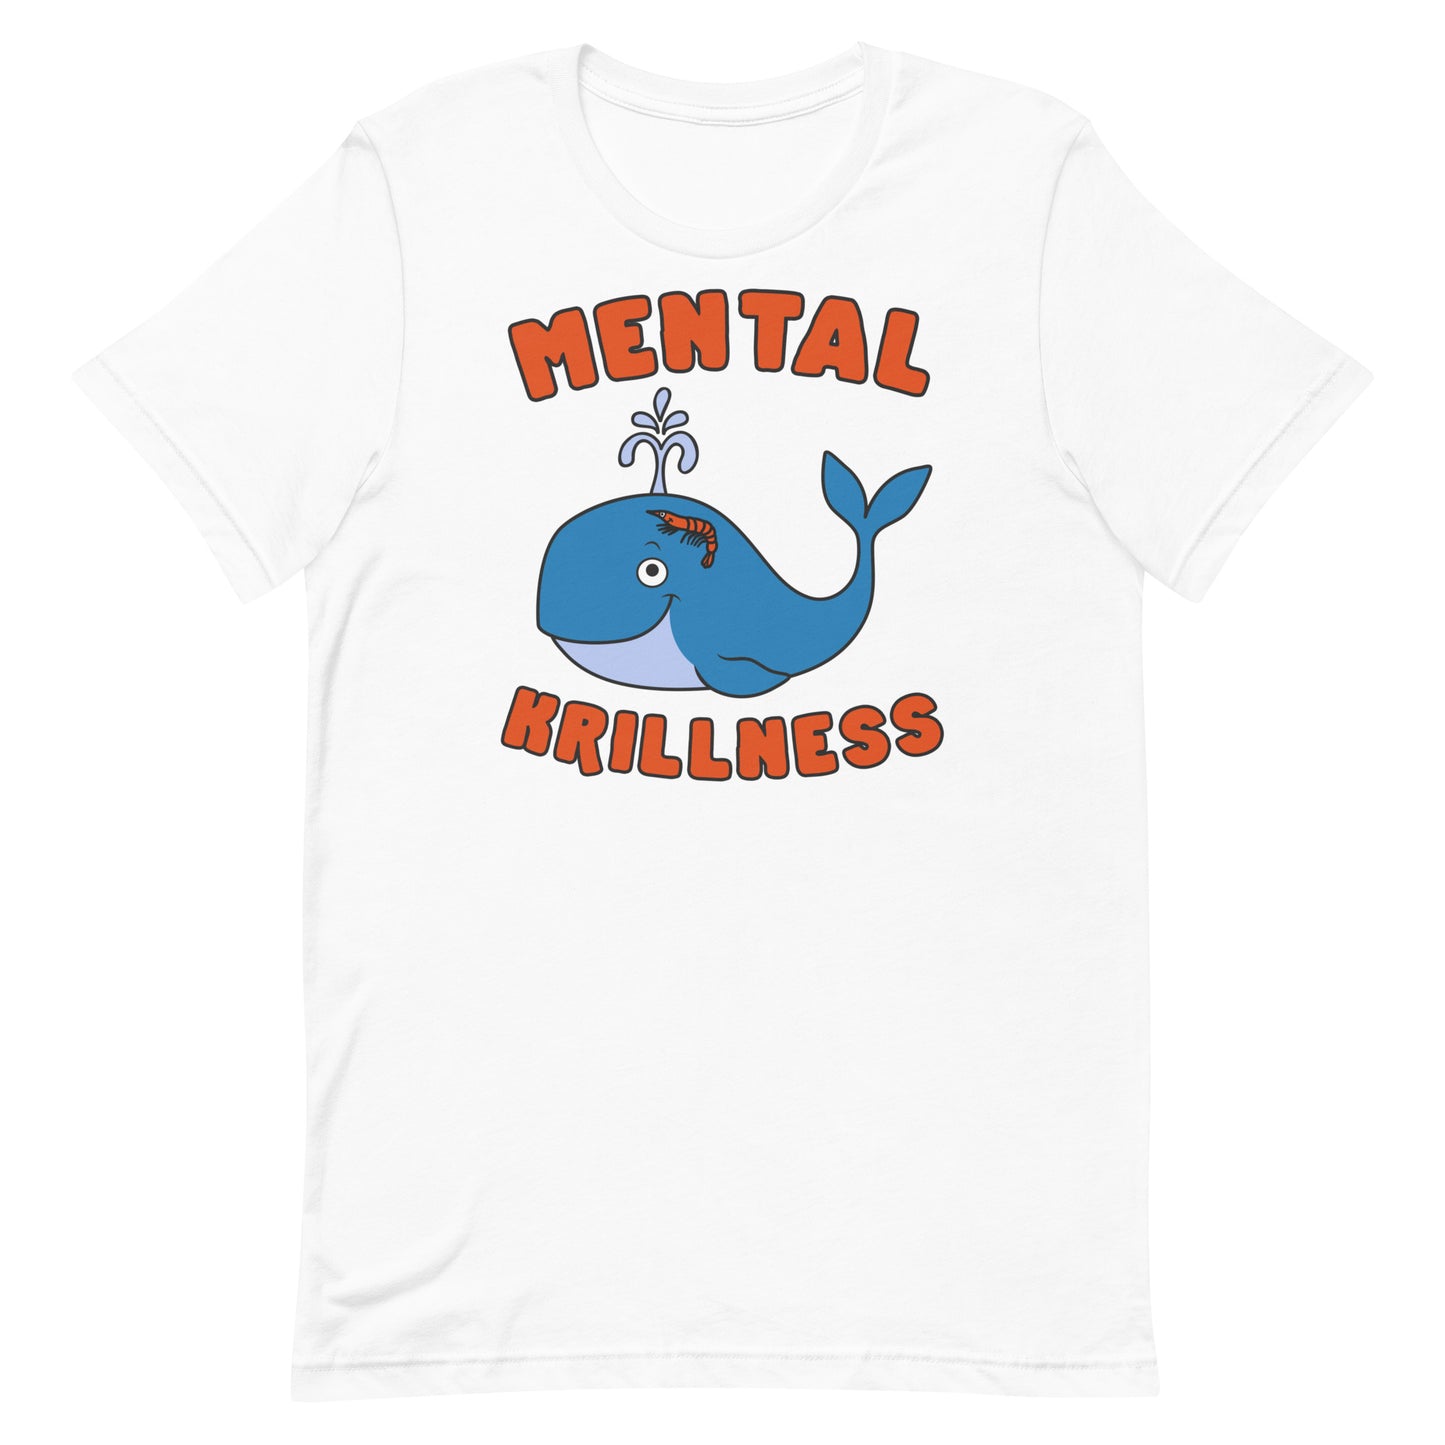 Mental Krillness Unisex t-shirt